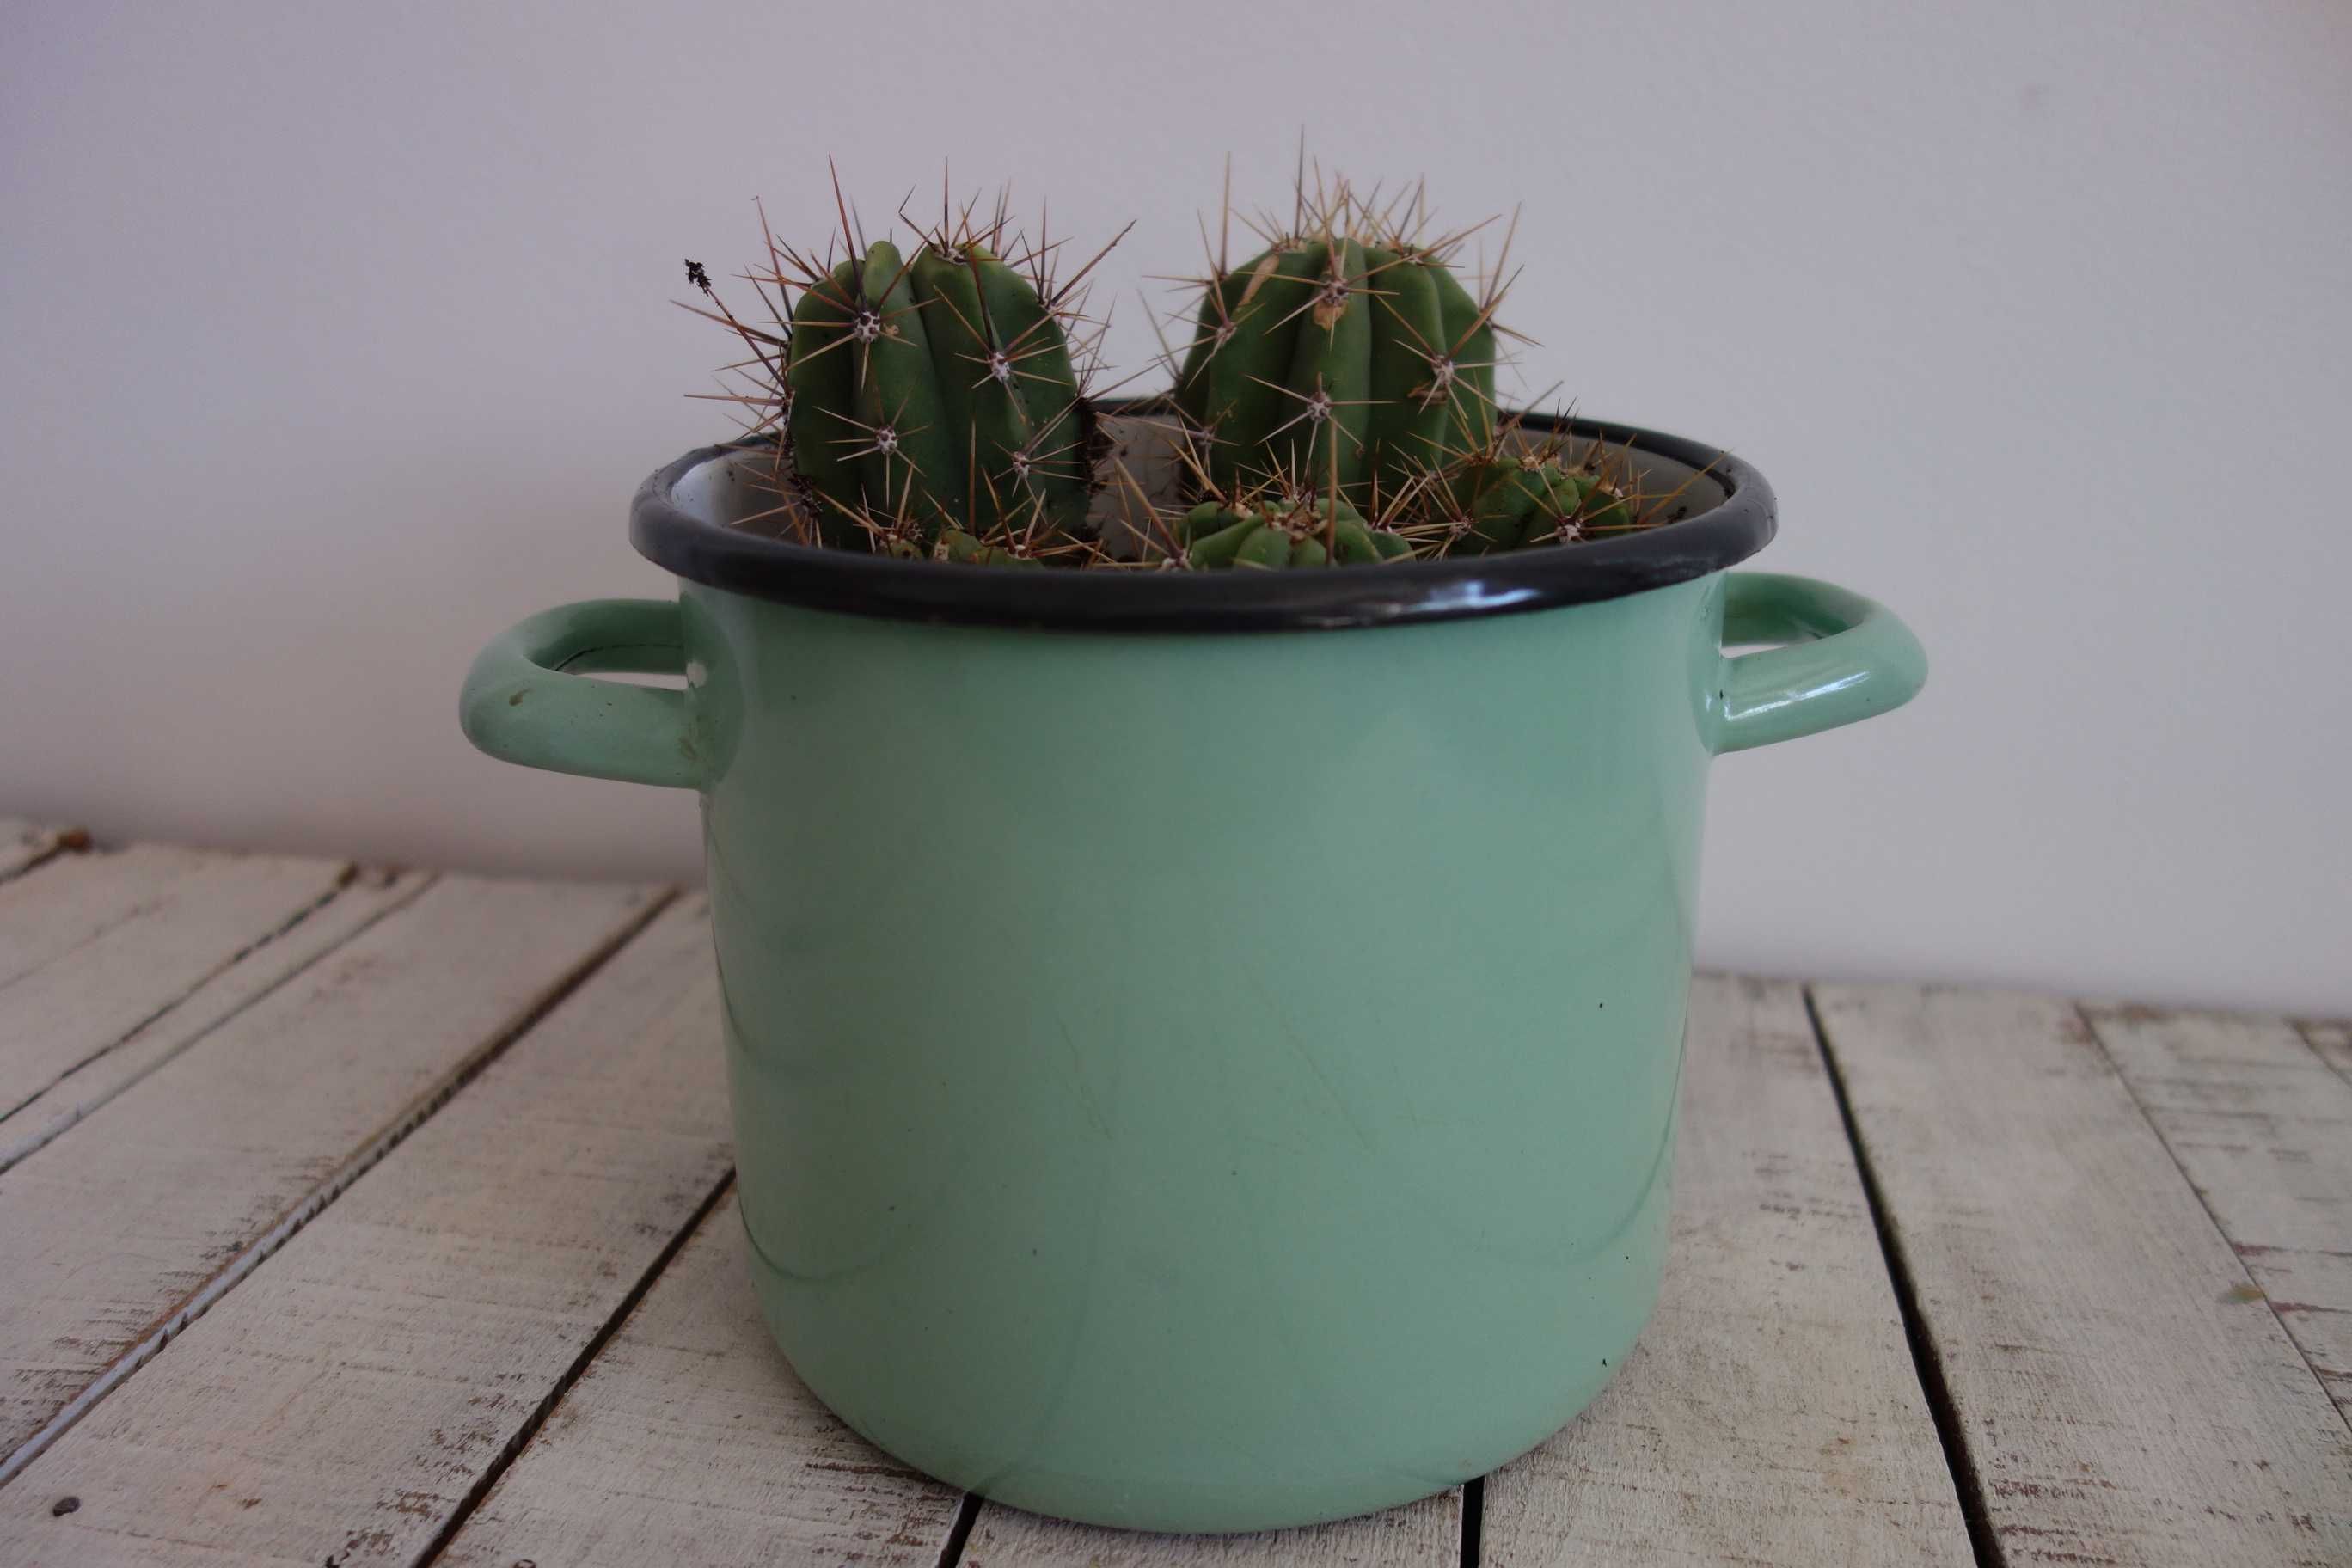 5 szt. kaktusy zdrowe rośliny doniczkowe emalia z OLkusza